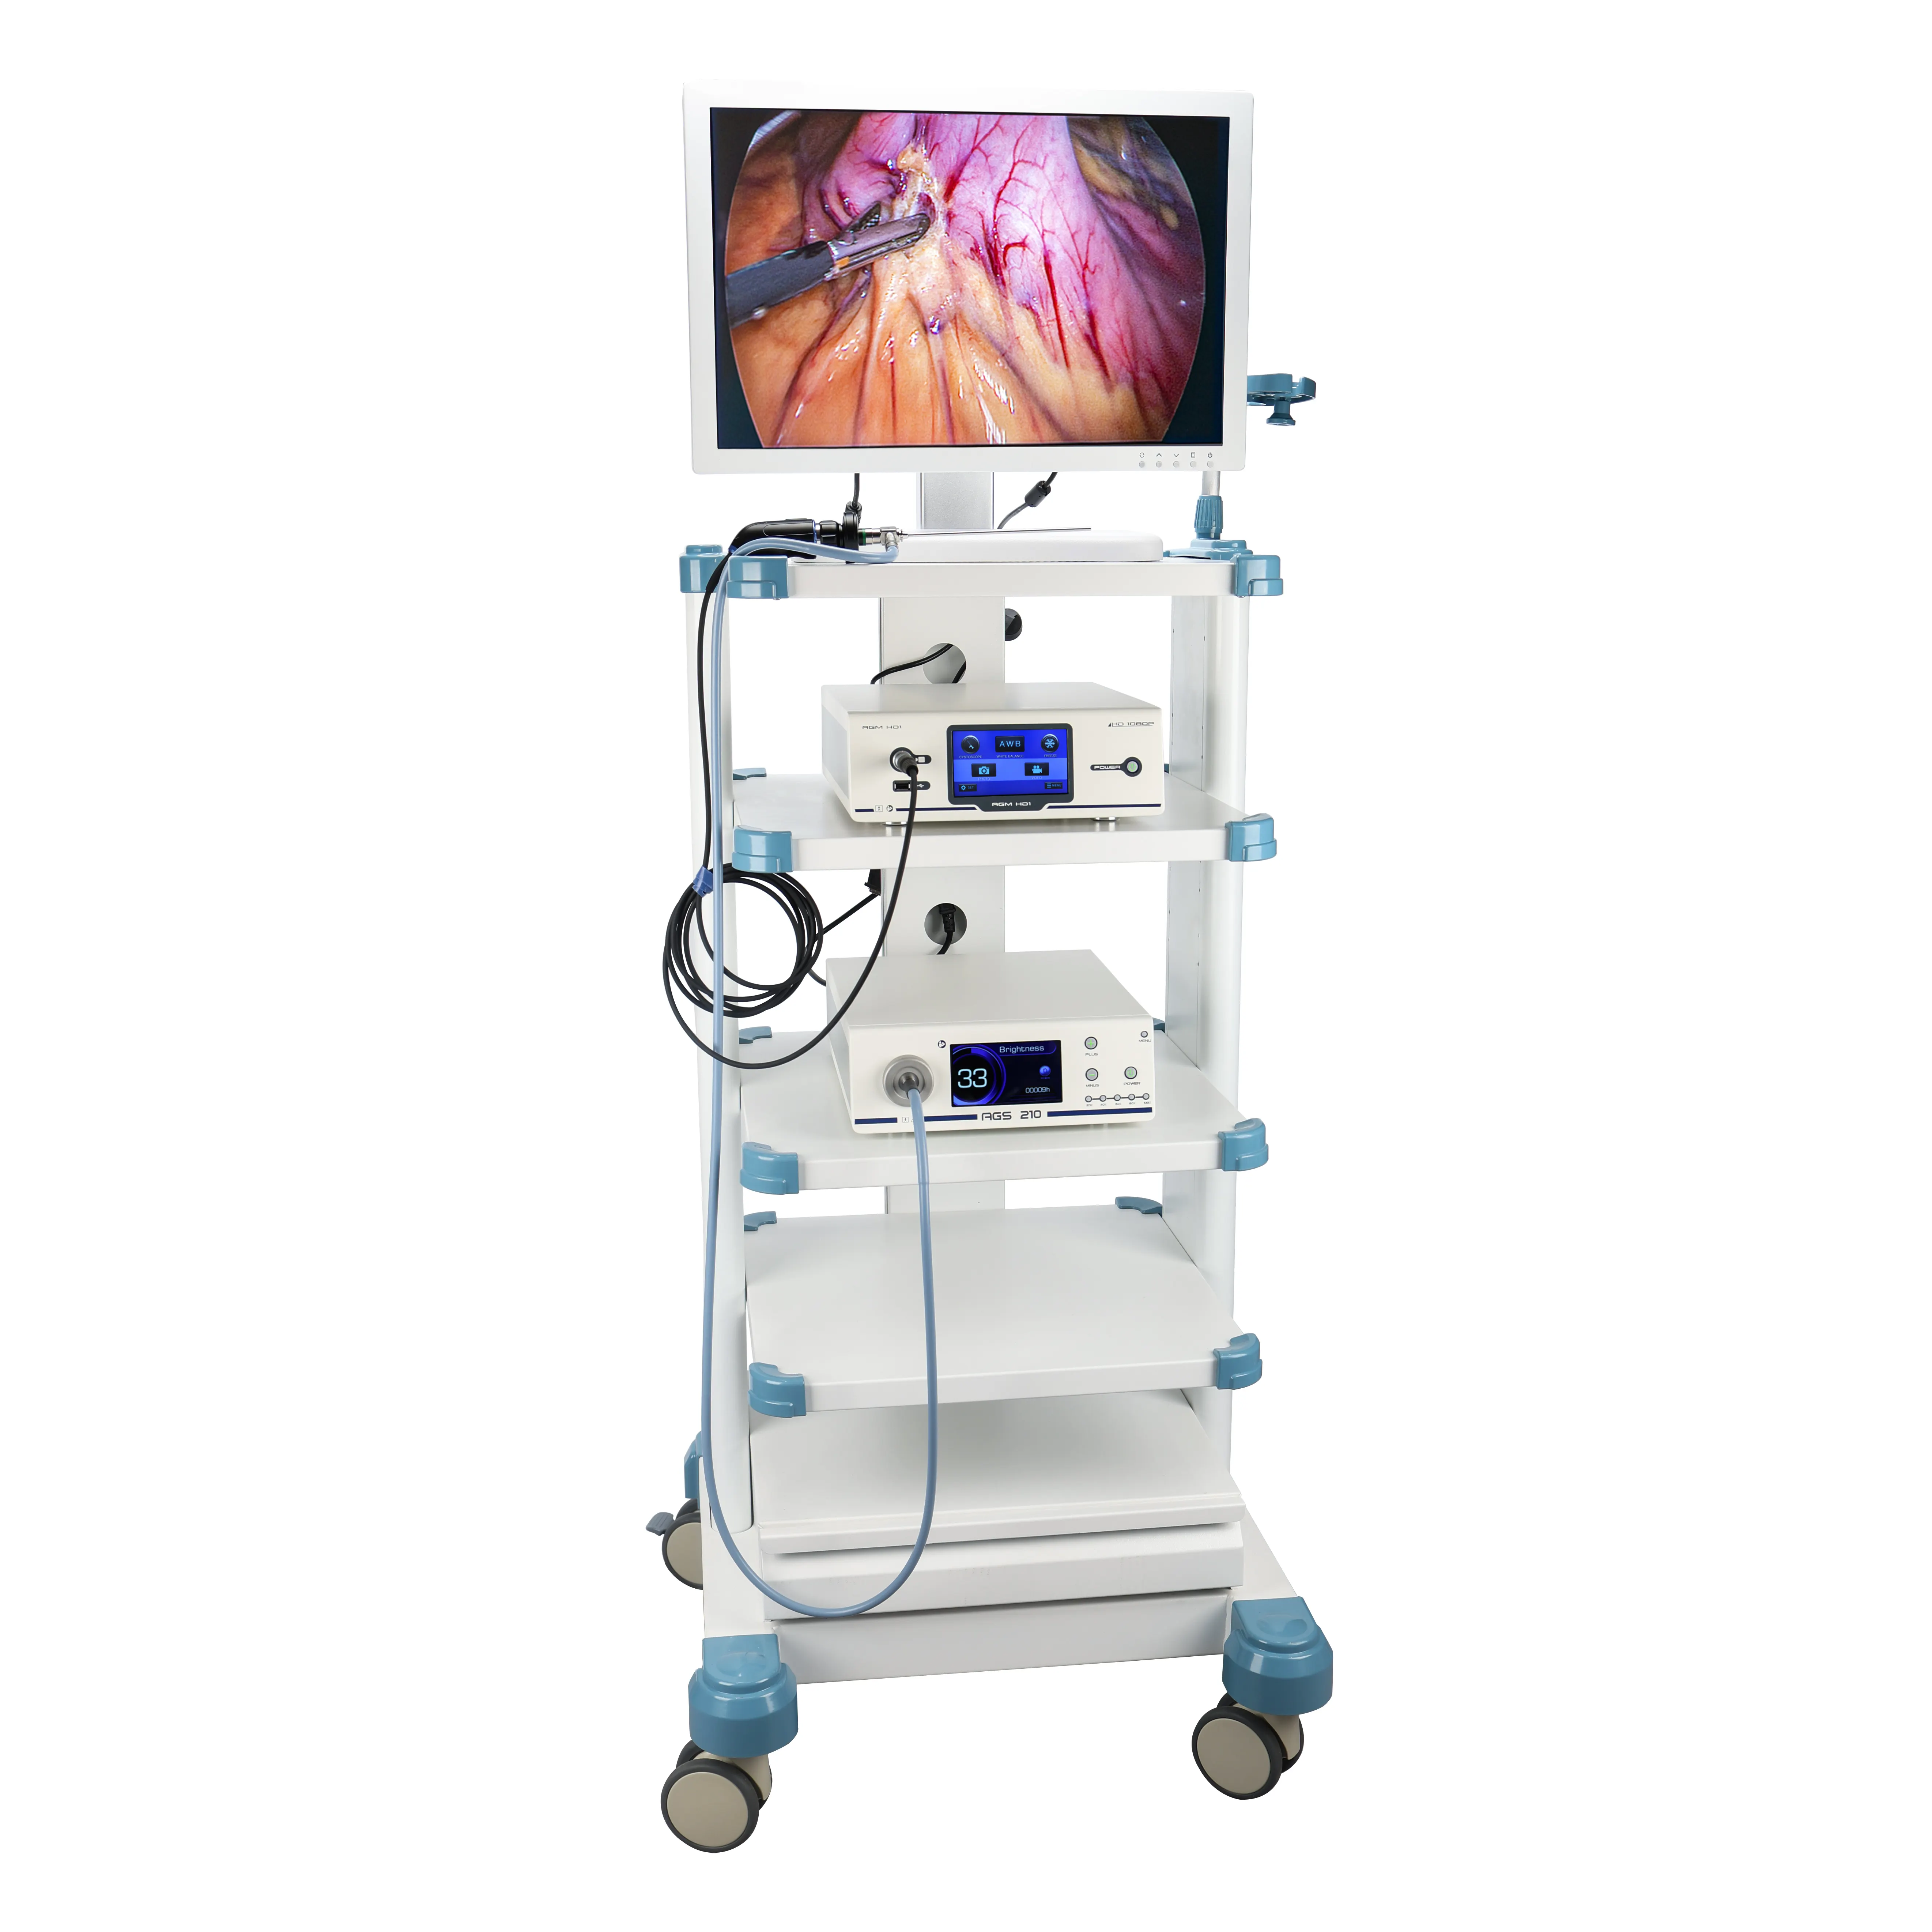 Harga pabrik menara laparoskopi HD penuh Set lengkap dengan peralatan & perangkat laparoskop, sistem kamera endoskopi